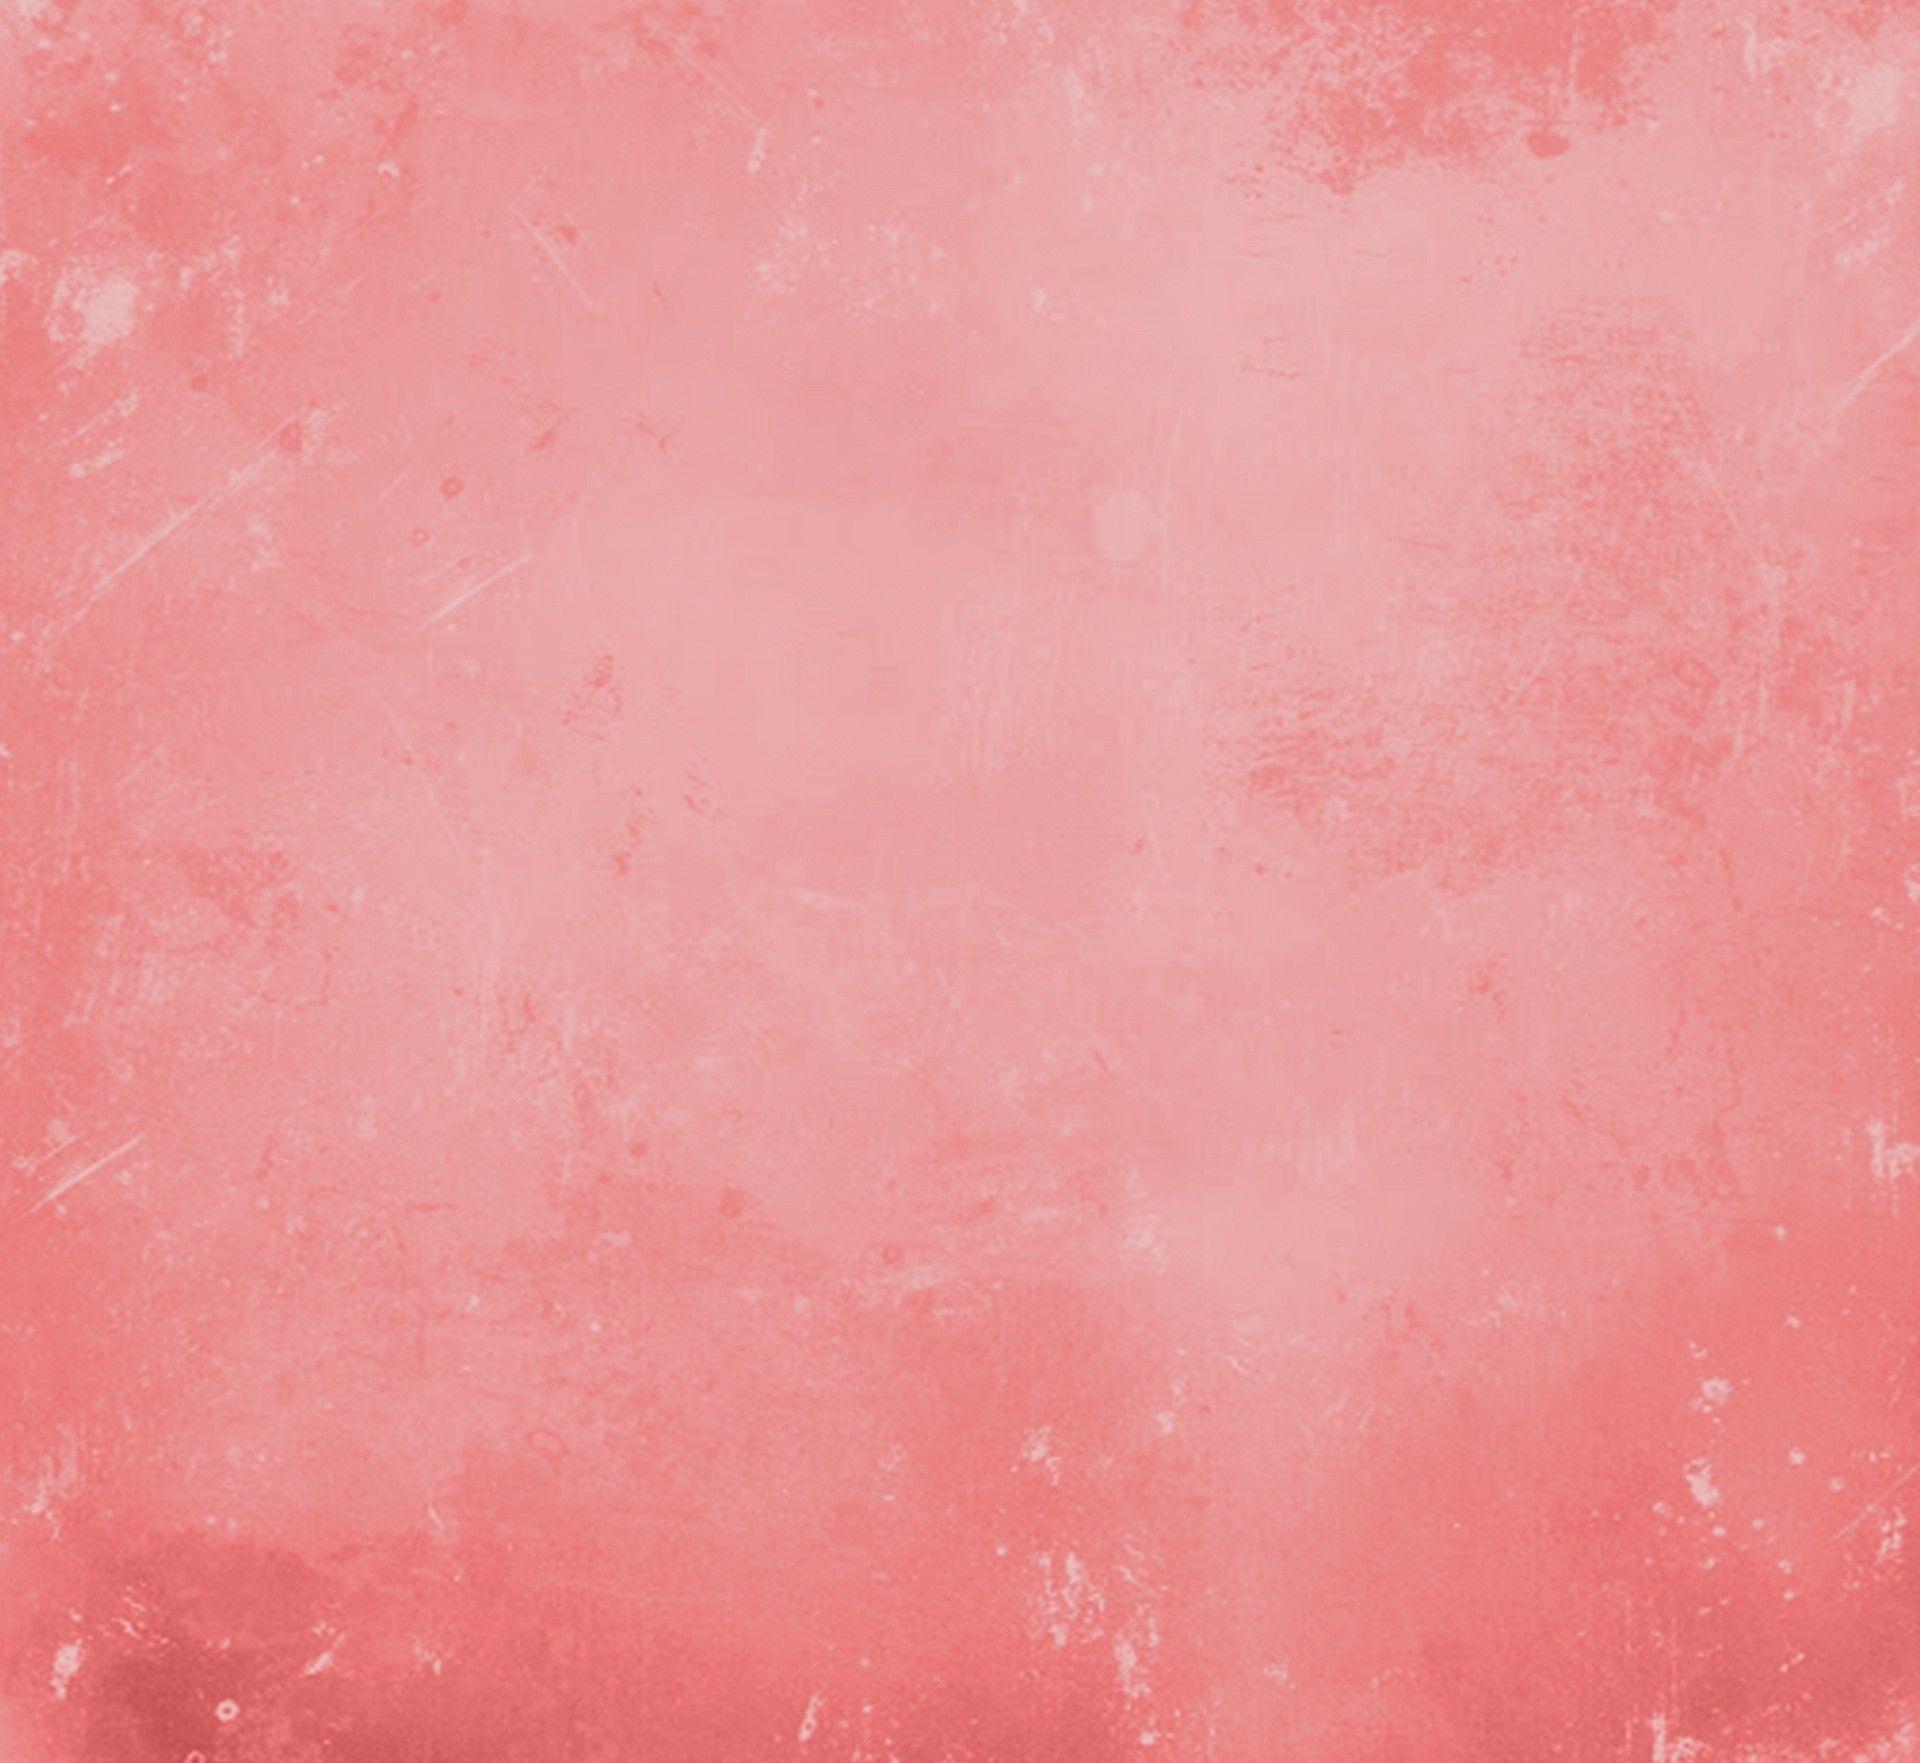 grunge pink aesthetic wallpaperBúsqueda de TikTok